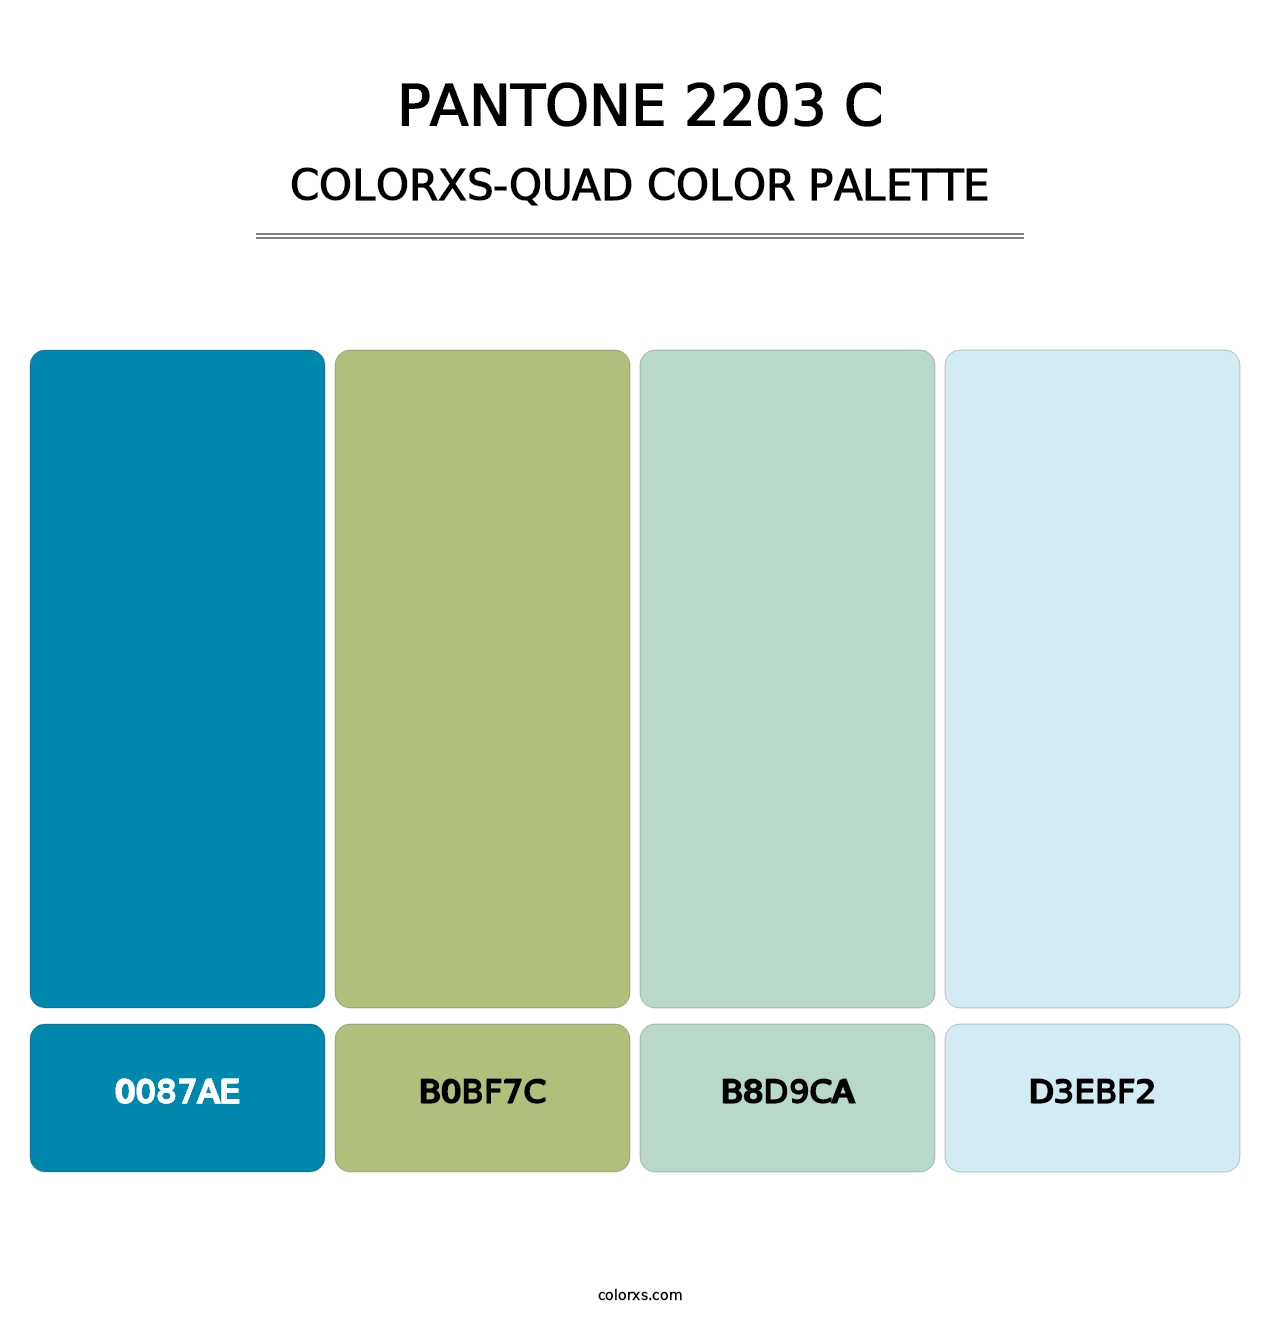 PANTONE 2203 C - Colorxs Quad Palette